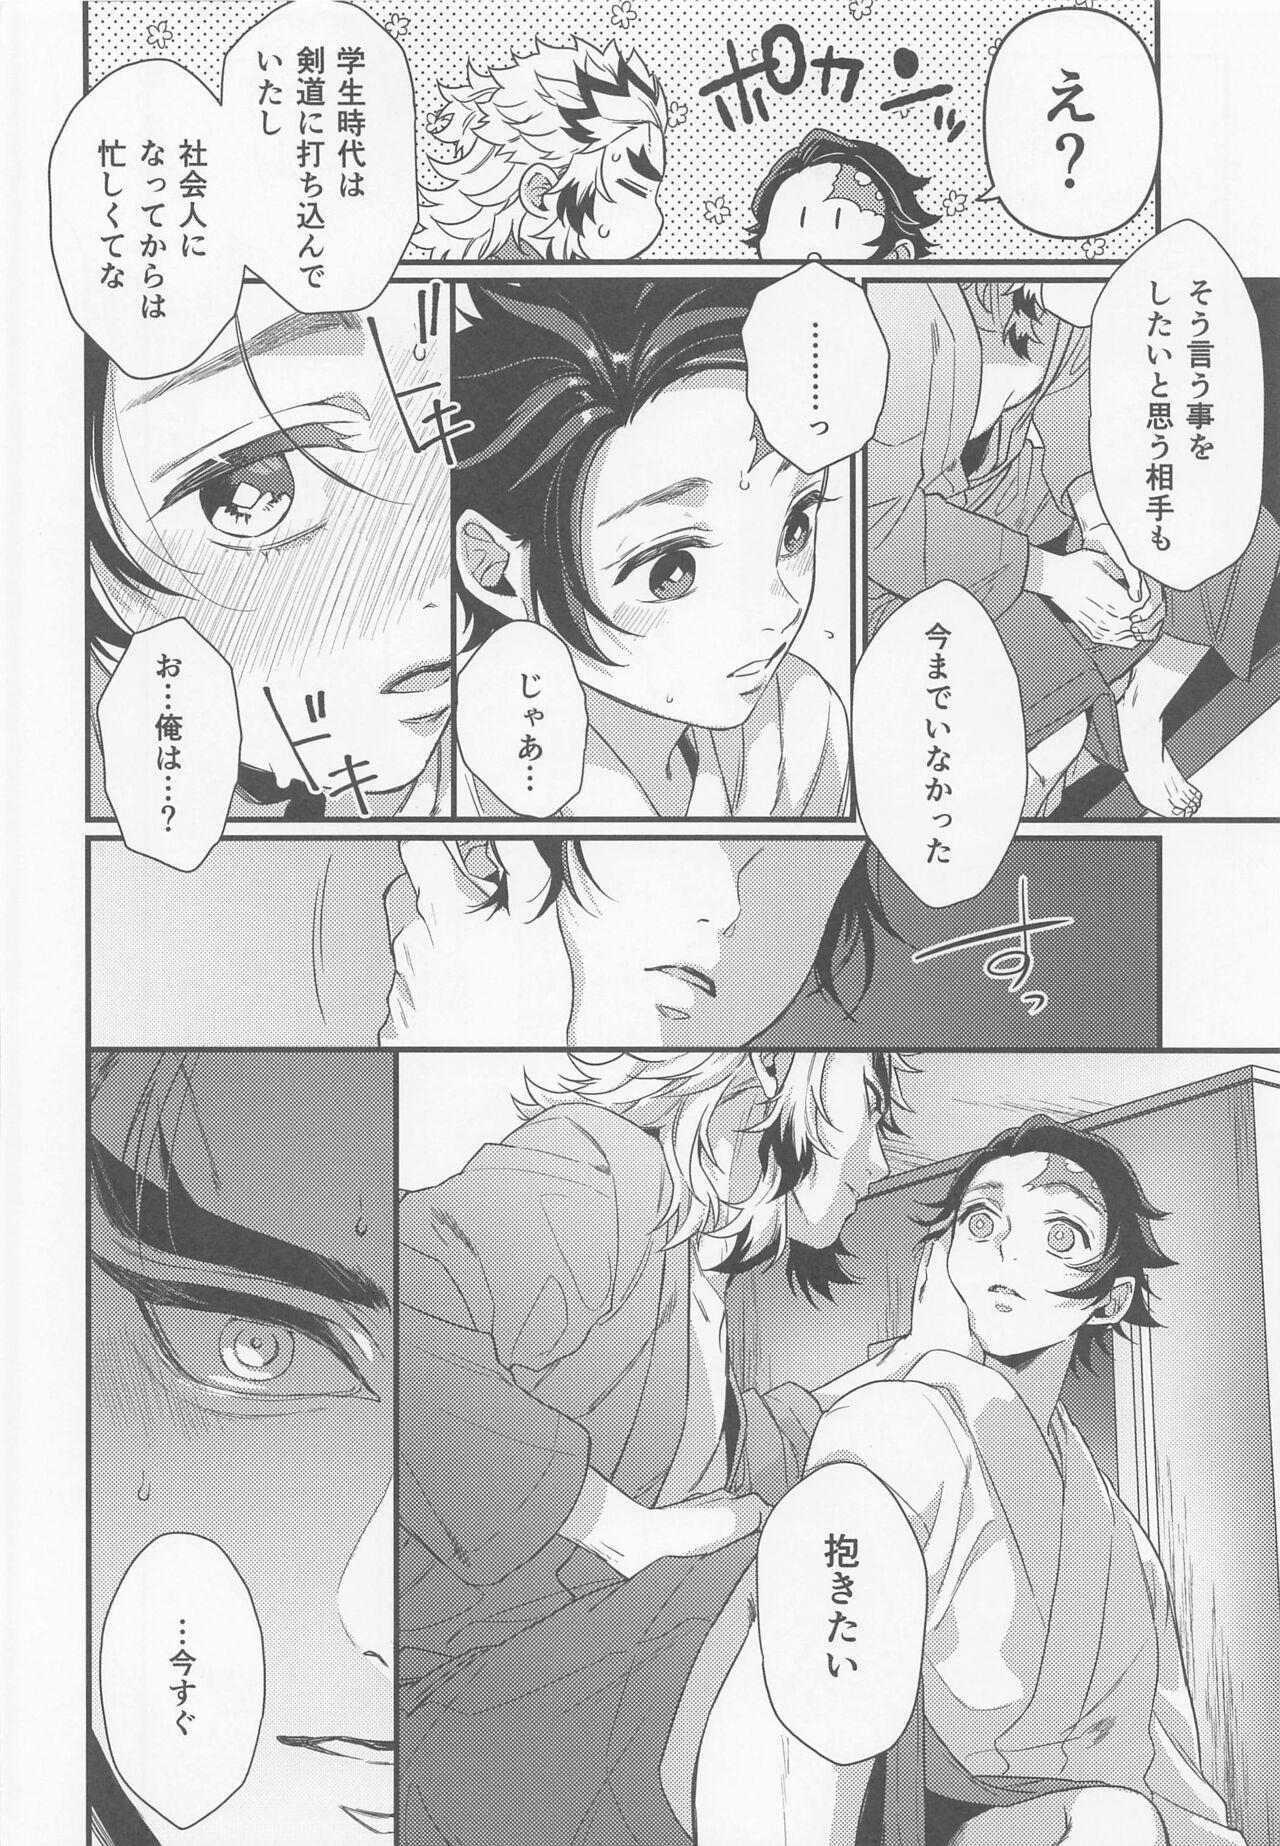 Small Tits sukida、shonen、daisukida - Kimetsu no yaiba | demon slayer Gay Party - Page 11